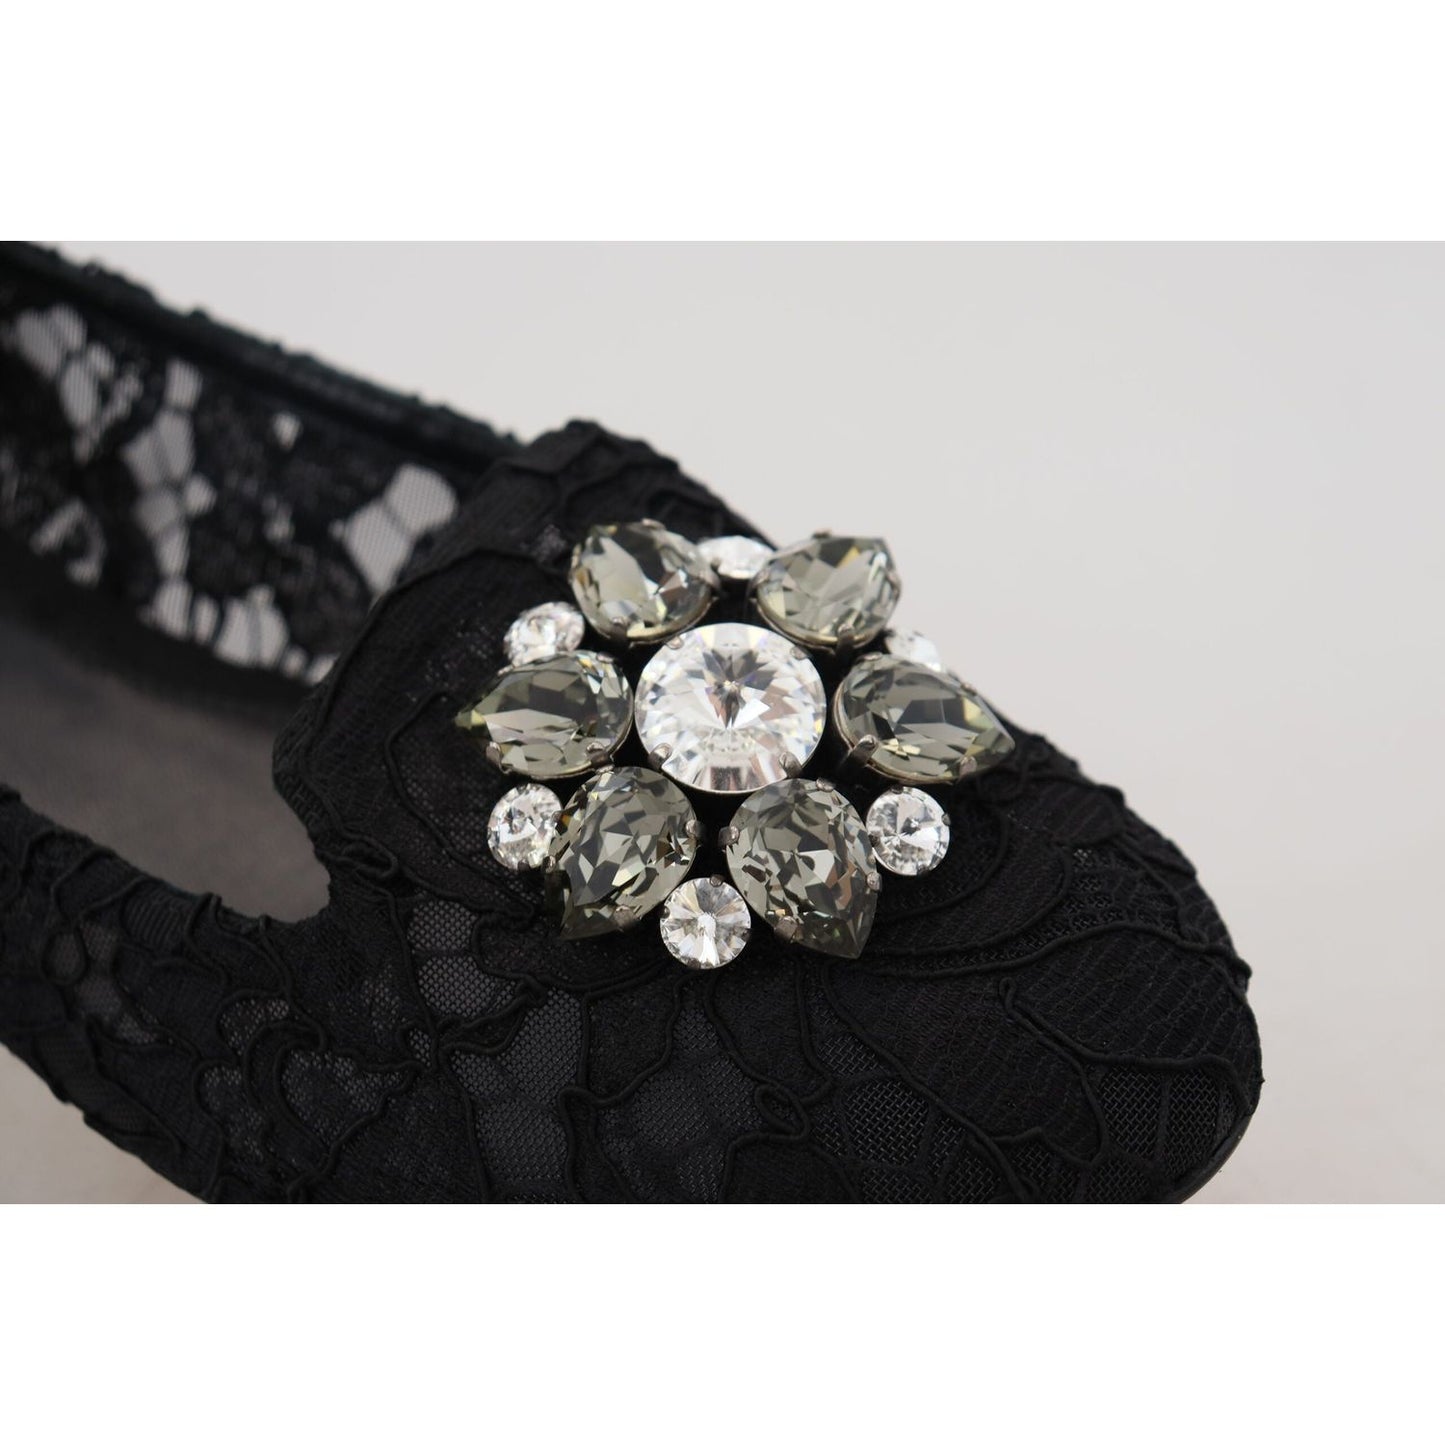 Dolce & GabbanaElegant Floral Lace Flat Vally ShoesMcRichard Designer Brands£409.00